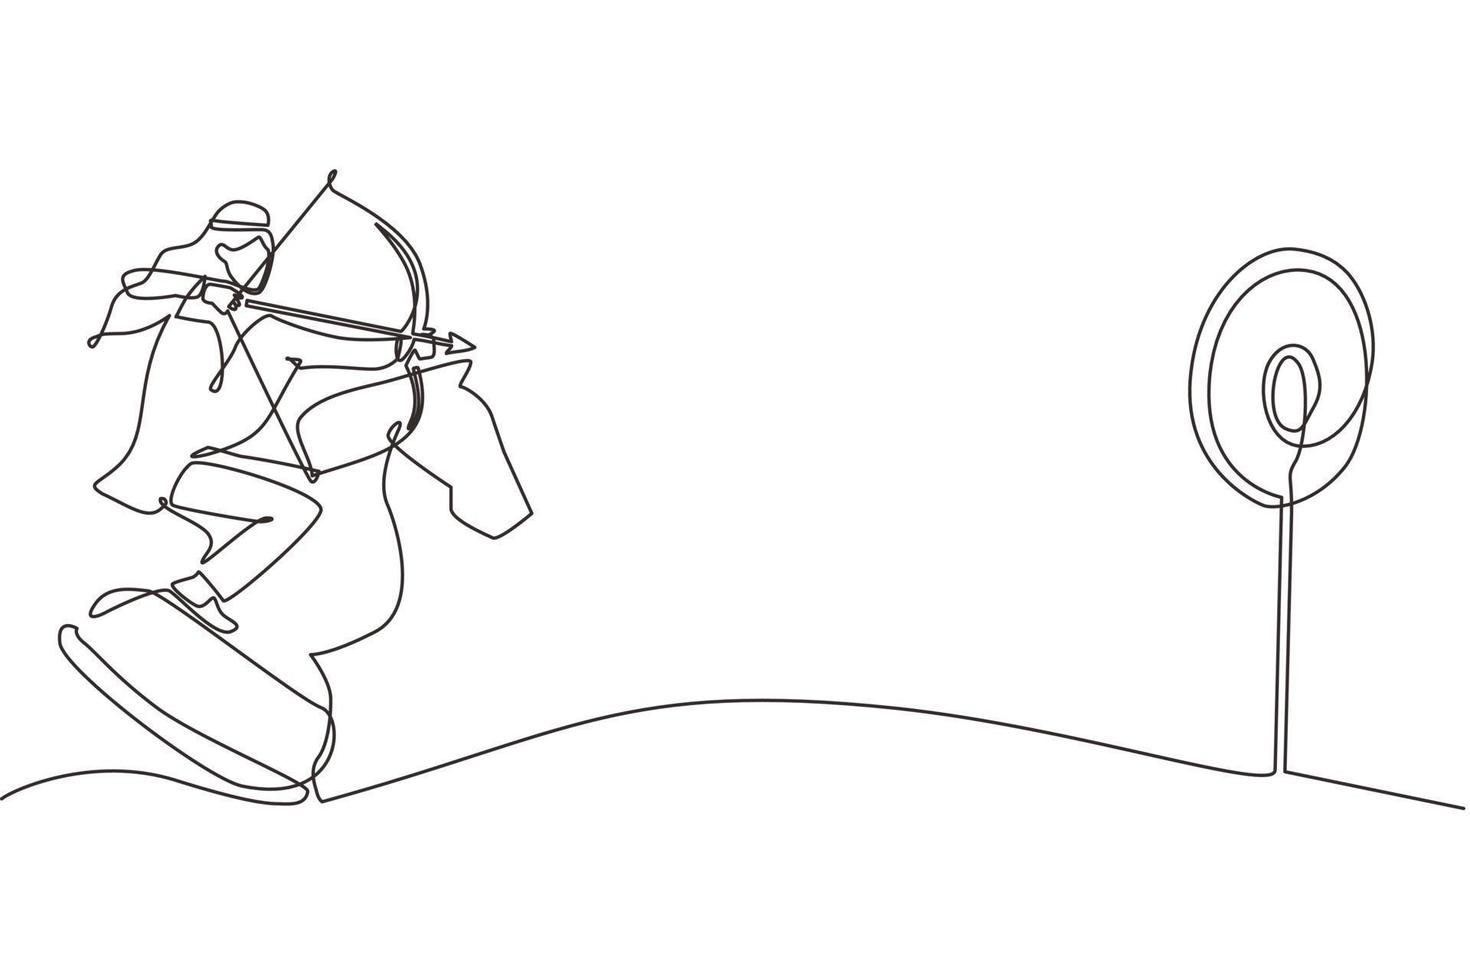 einzelne einstrichzeichnung arabischer geschäftsmann, der ziel beim bogenschießen hält, während er schachritterstück reitet, strategisches konzept. erfolgreicher geschäftsführer. ununterbrochene Linie zeichnen Design-Vektor-Illustration vektor